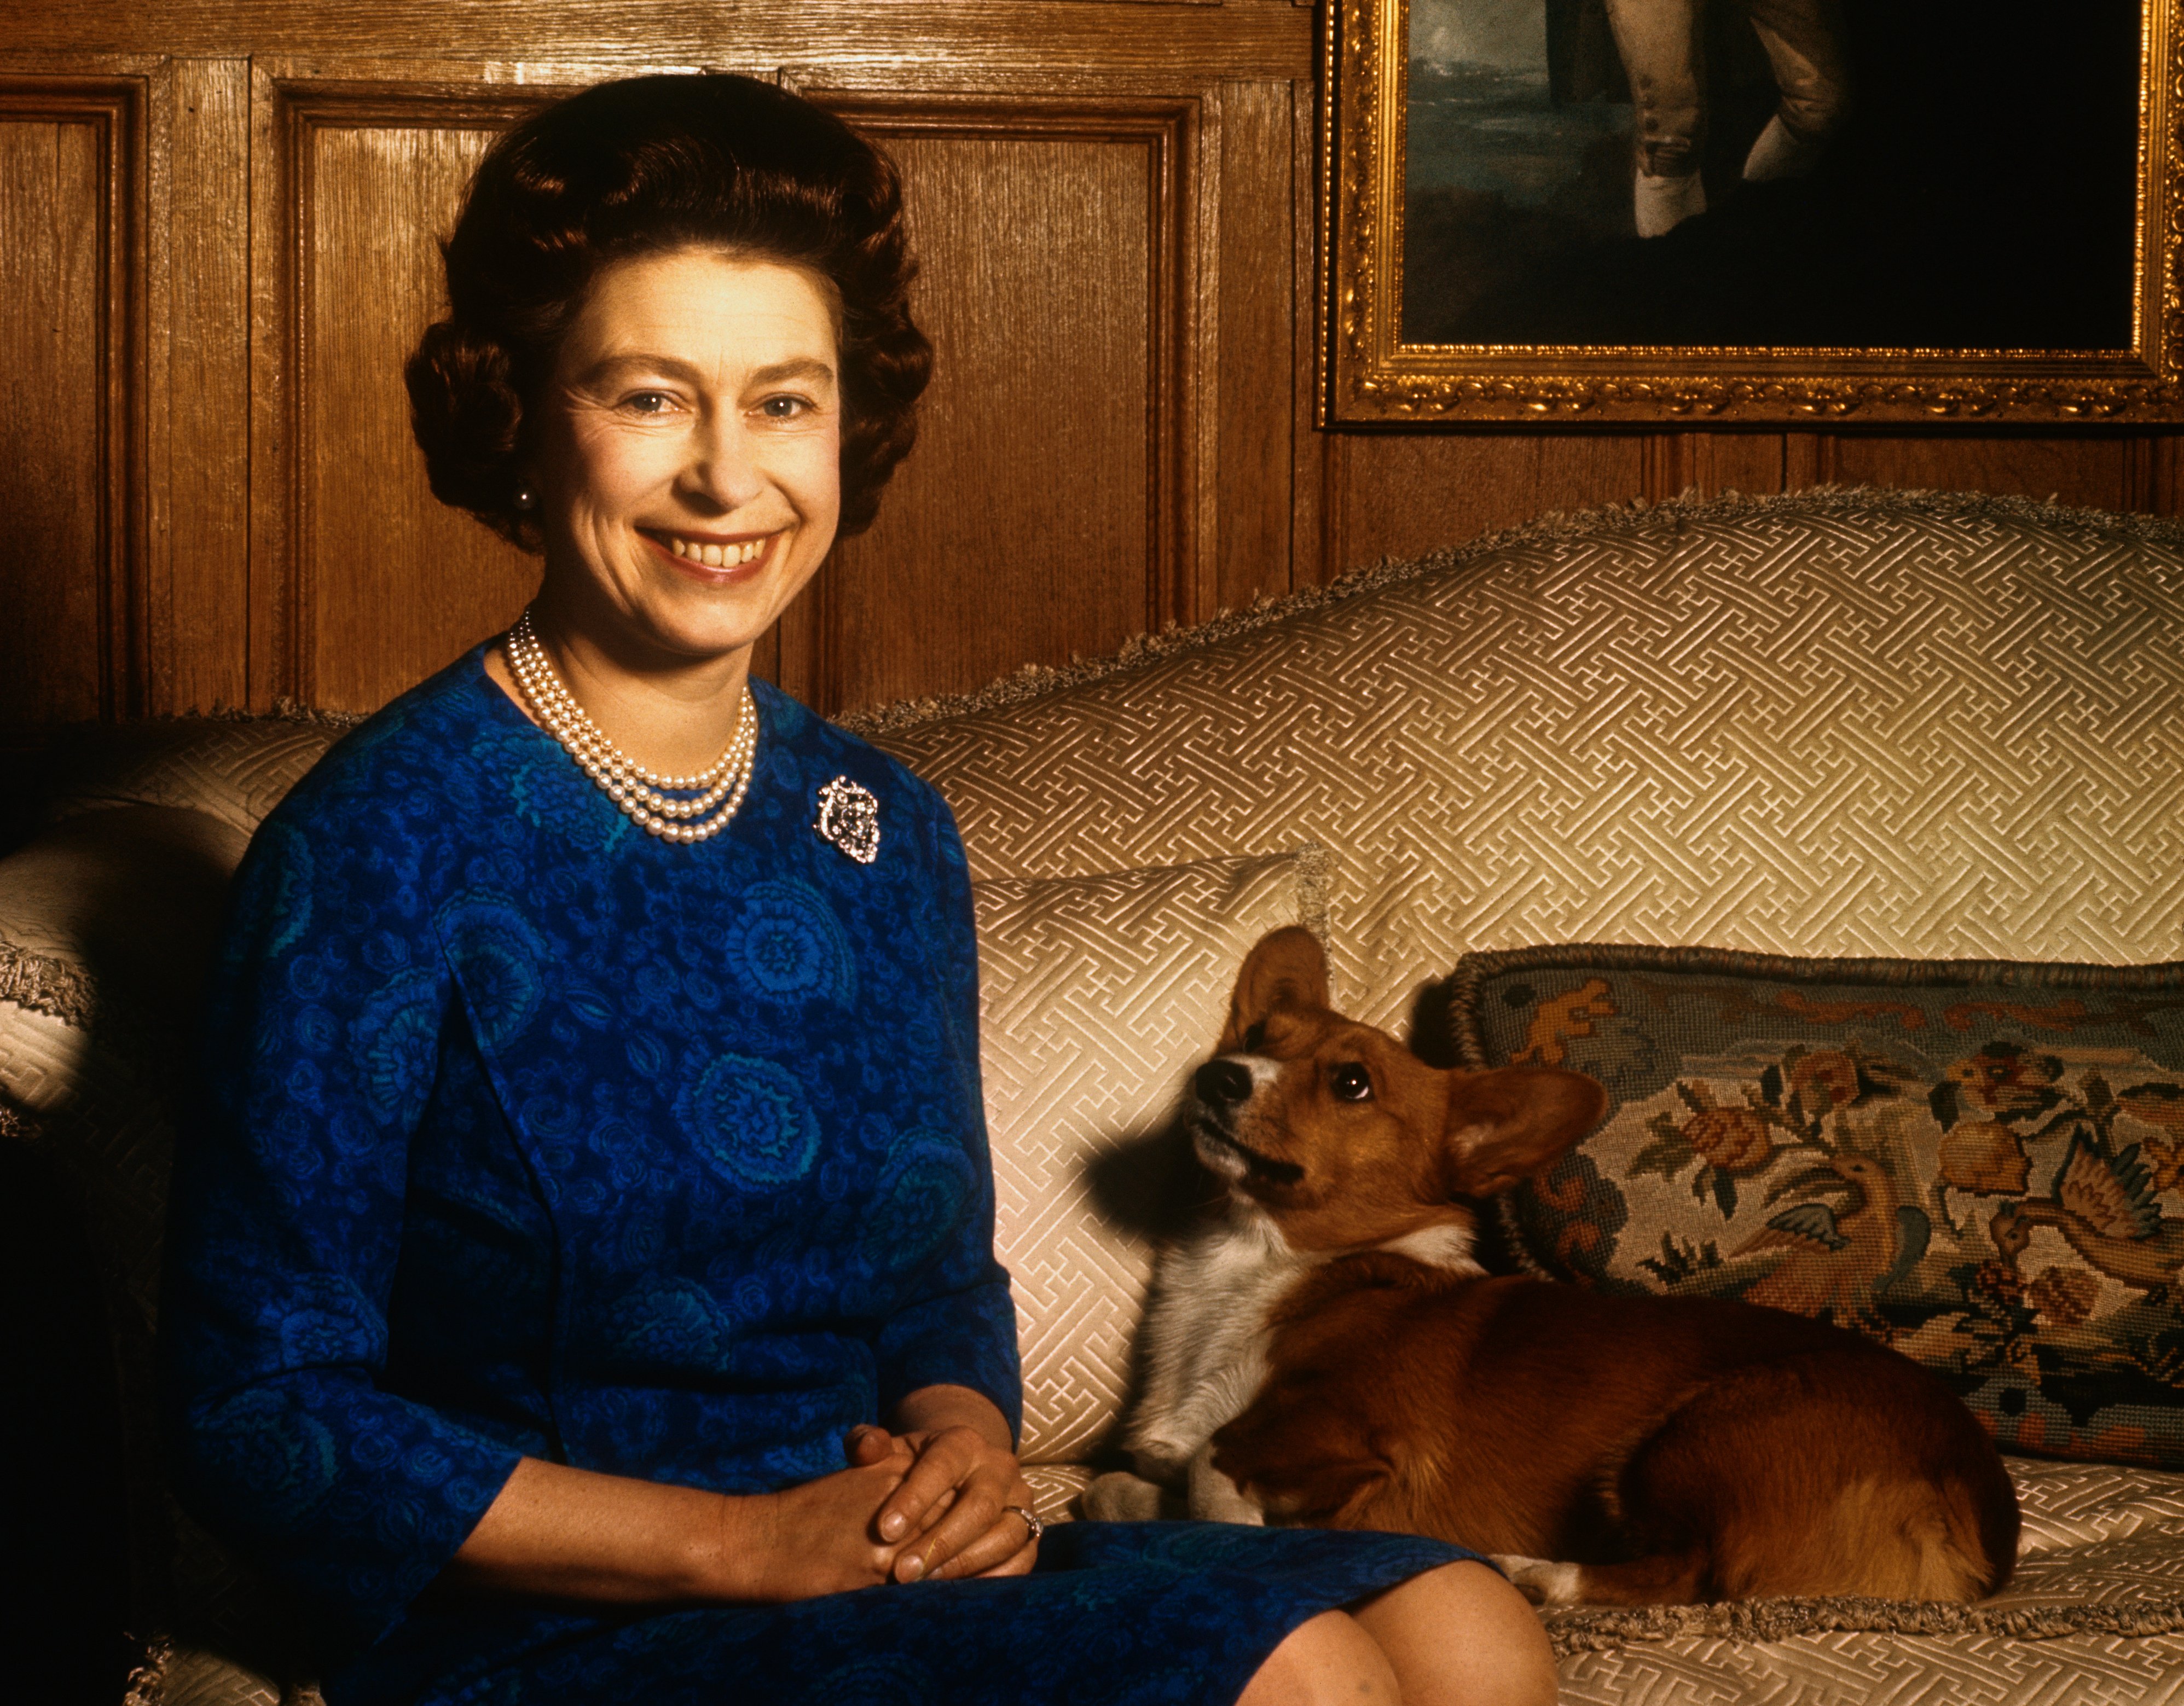 La reina Elizabeth II fotografiada junto a su perro mascota durante una sesión de fotografía en el salón de Sandringham House. | Foto: Getty Images